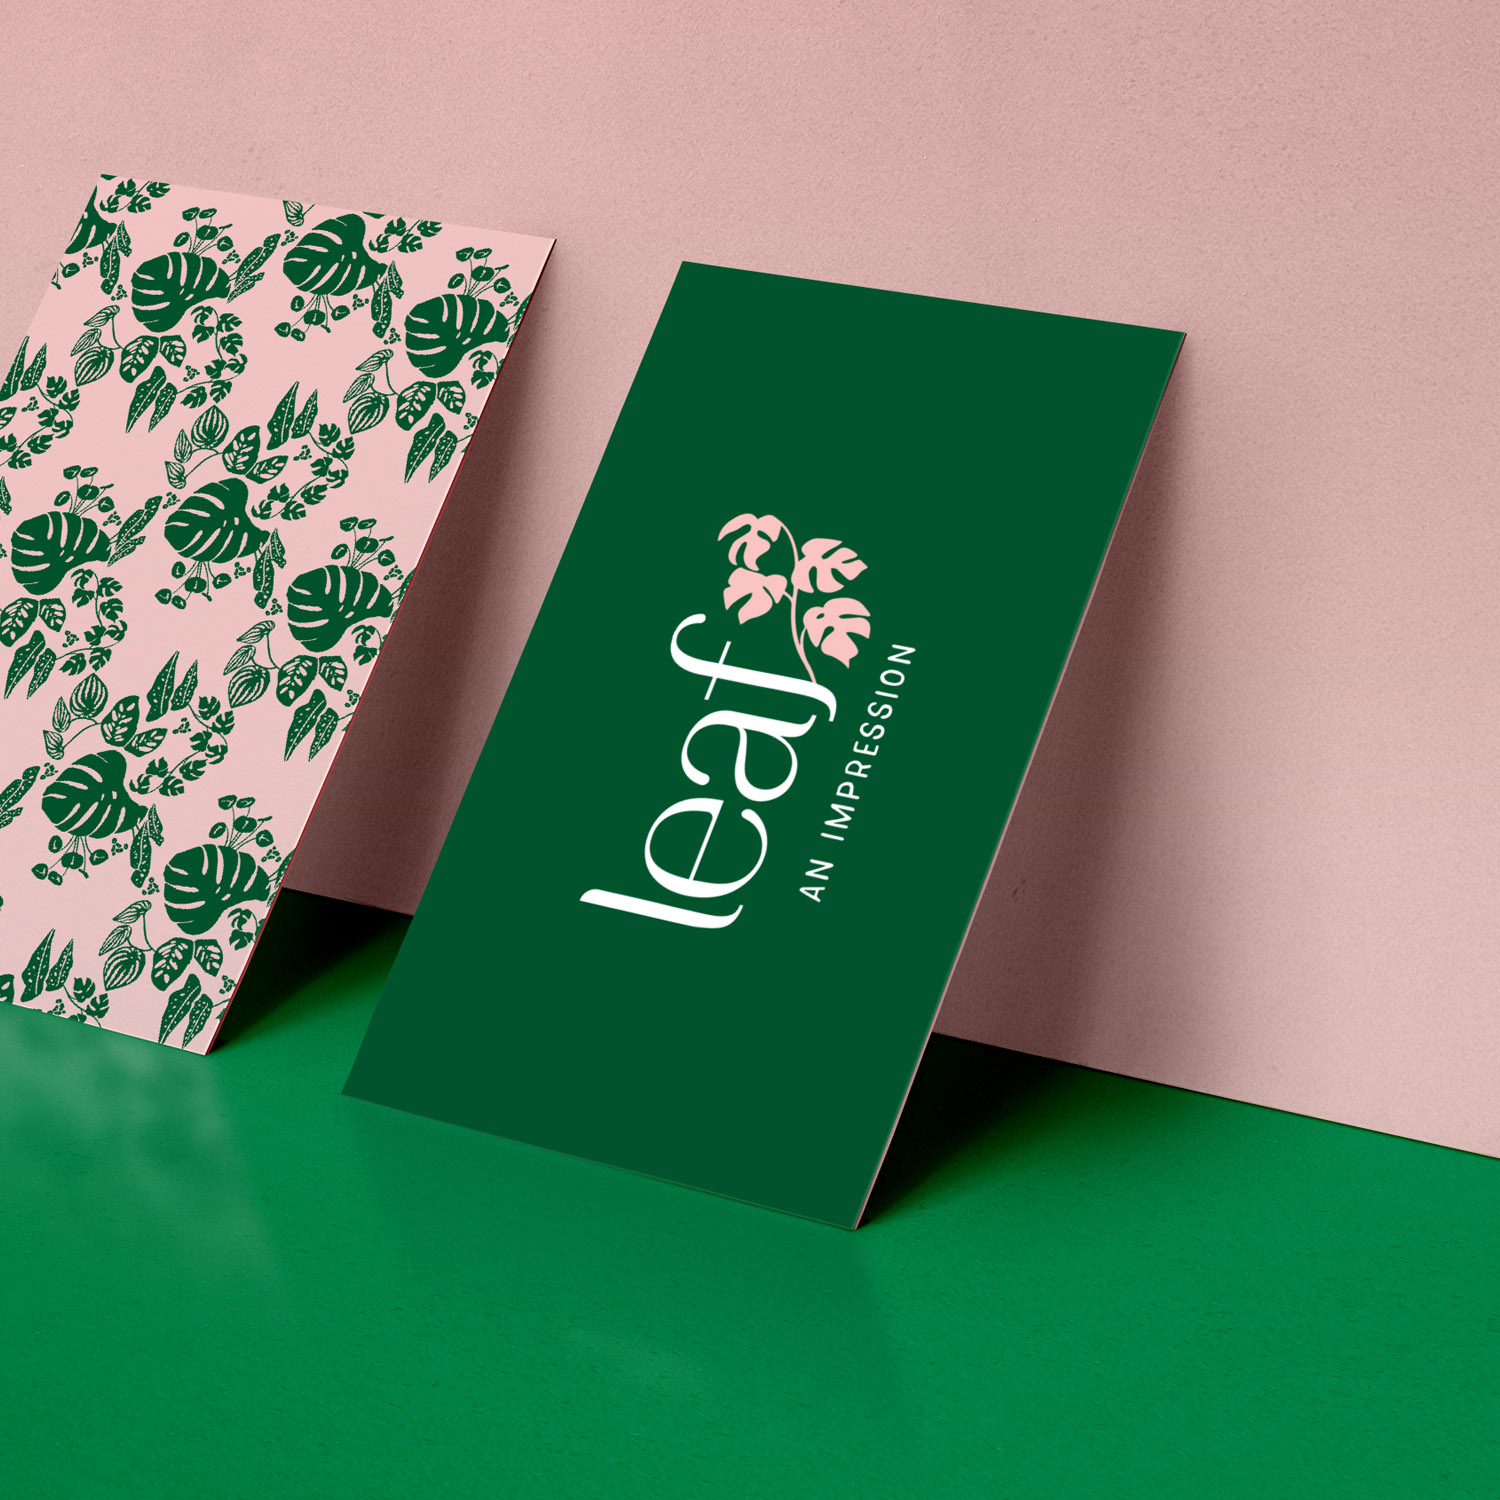 Leaf An Impression brand identity by Leysa Flores Design